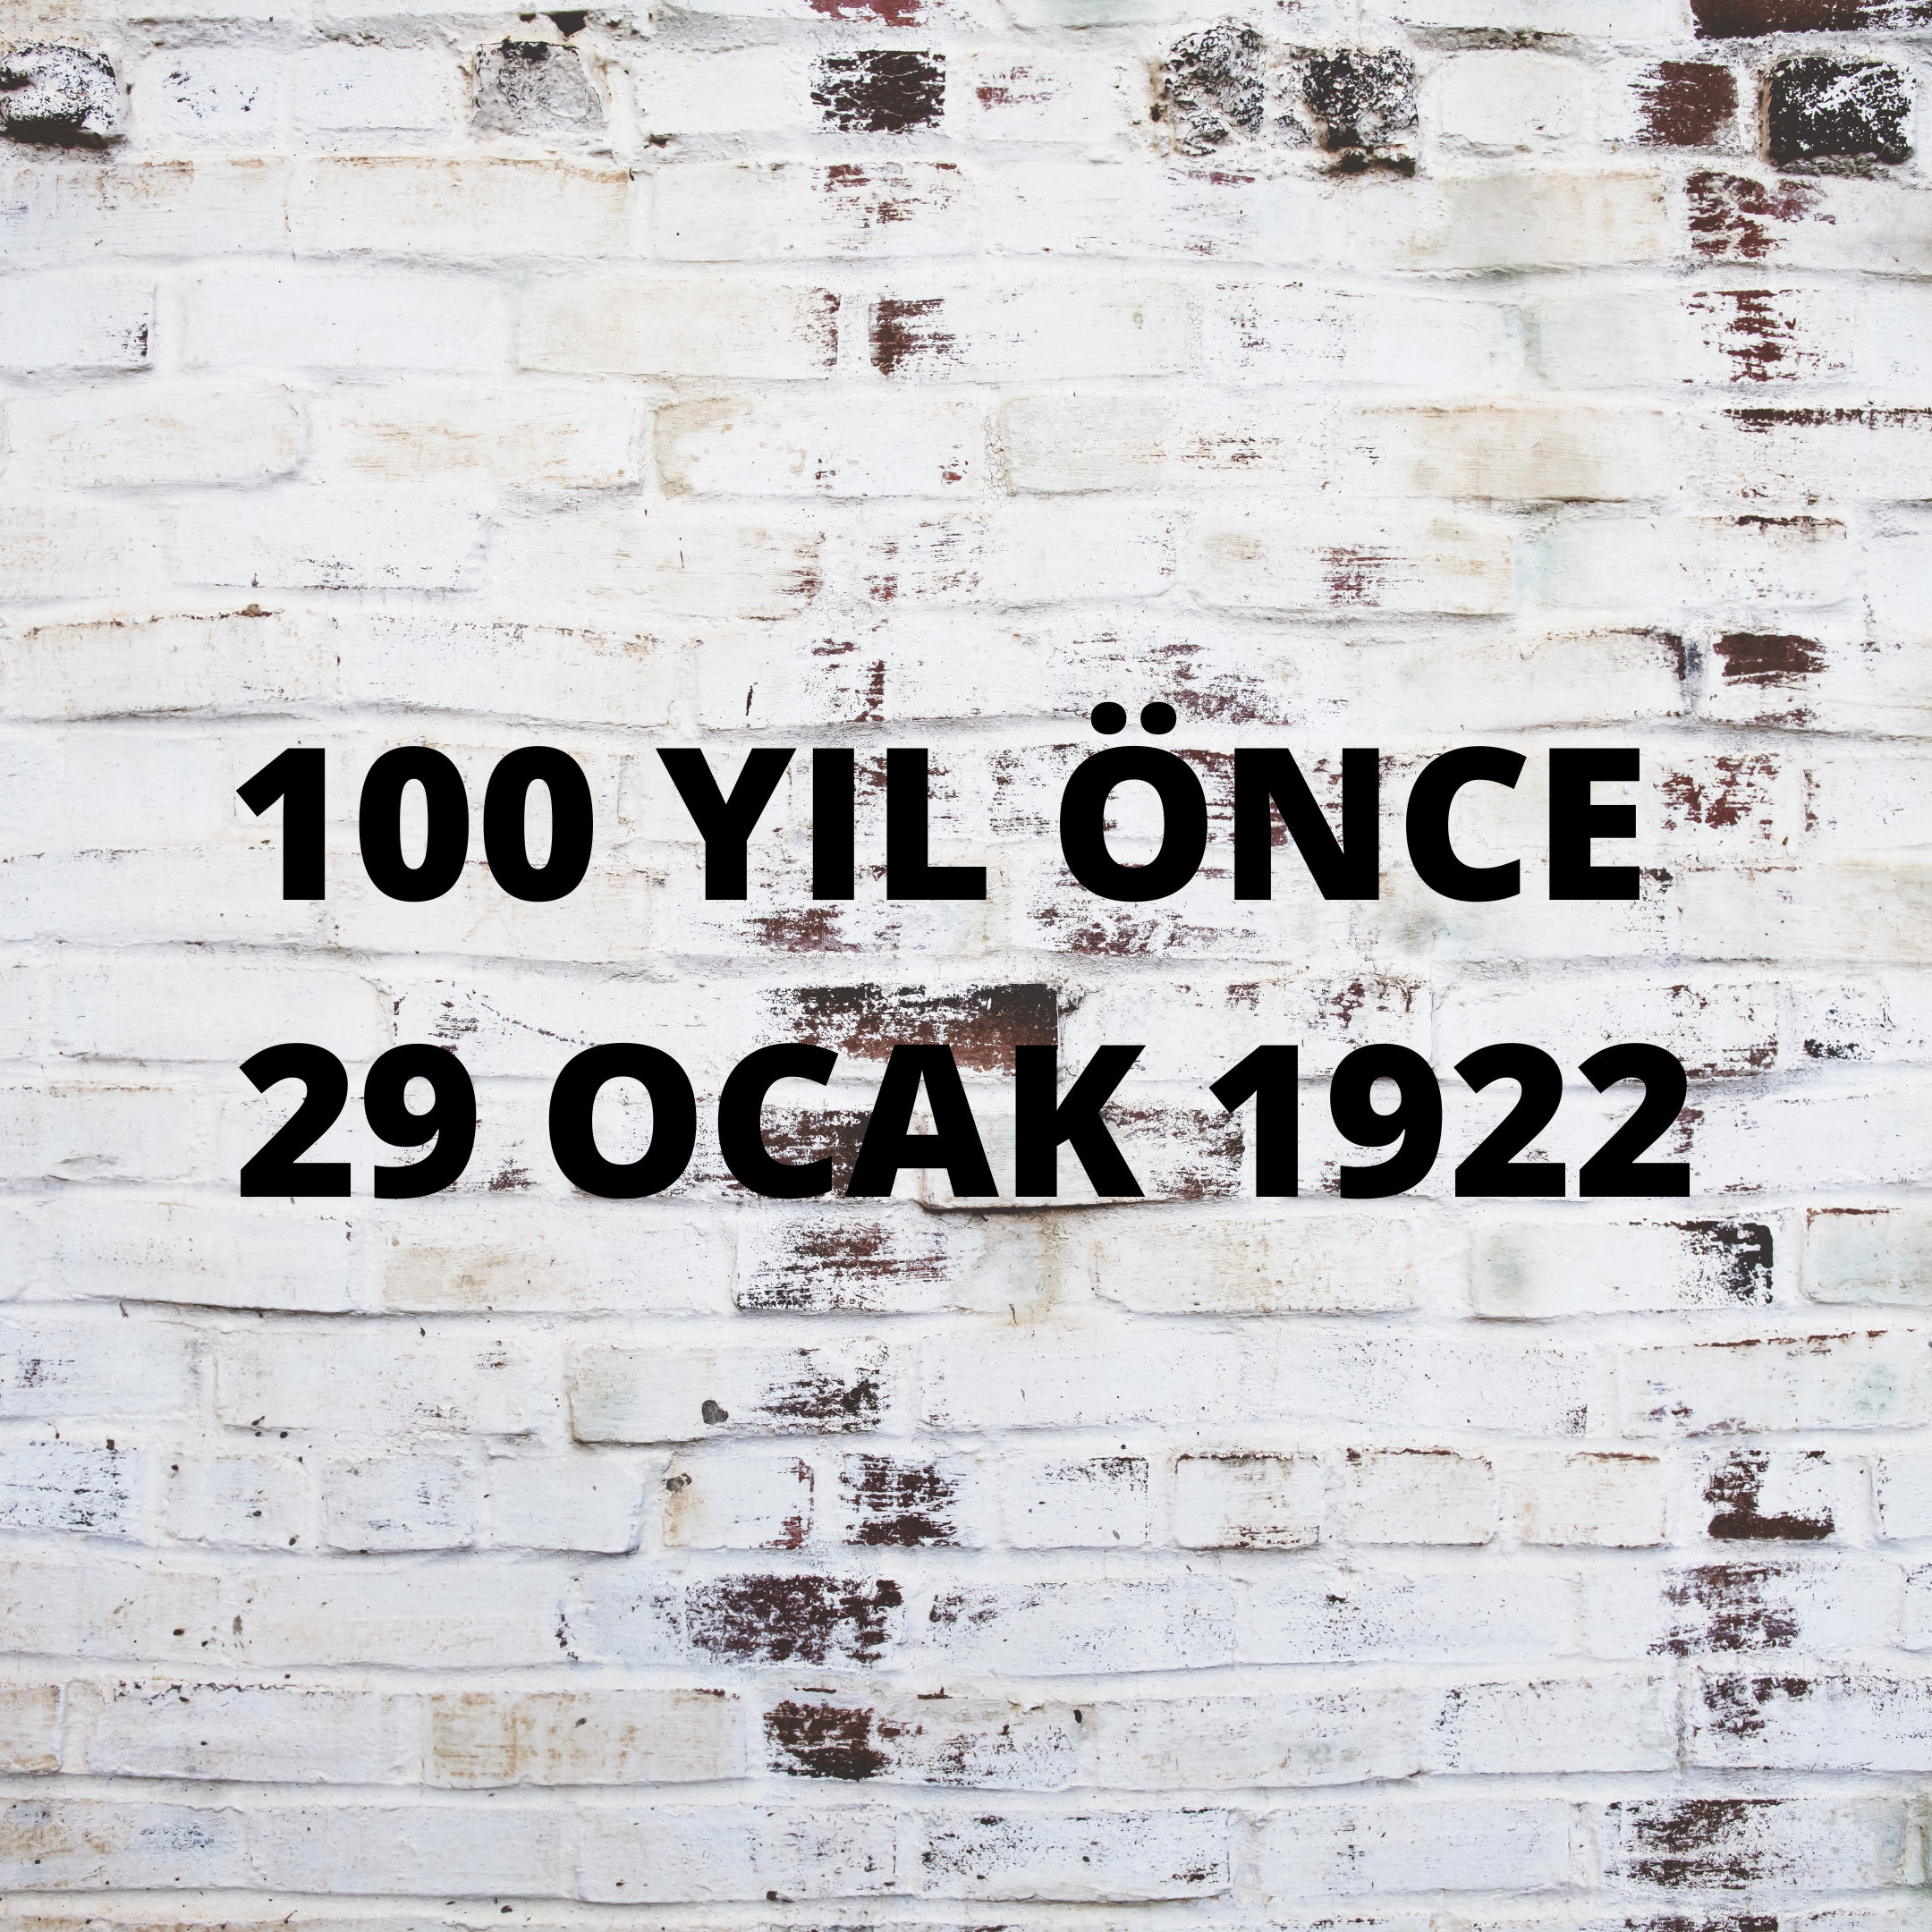 100 YIL ÖNCE 29 OCAK 1922